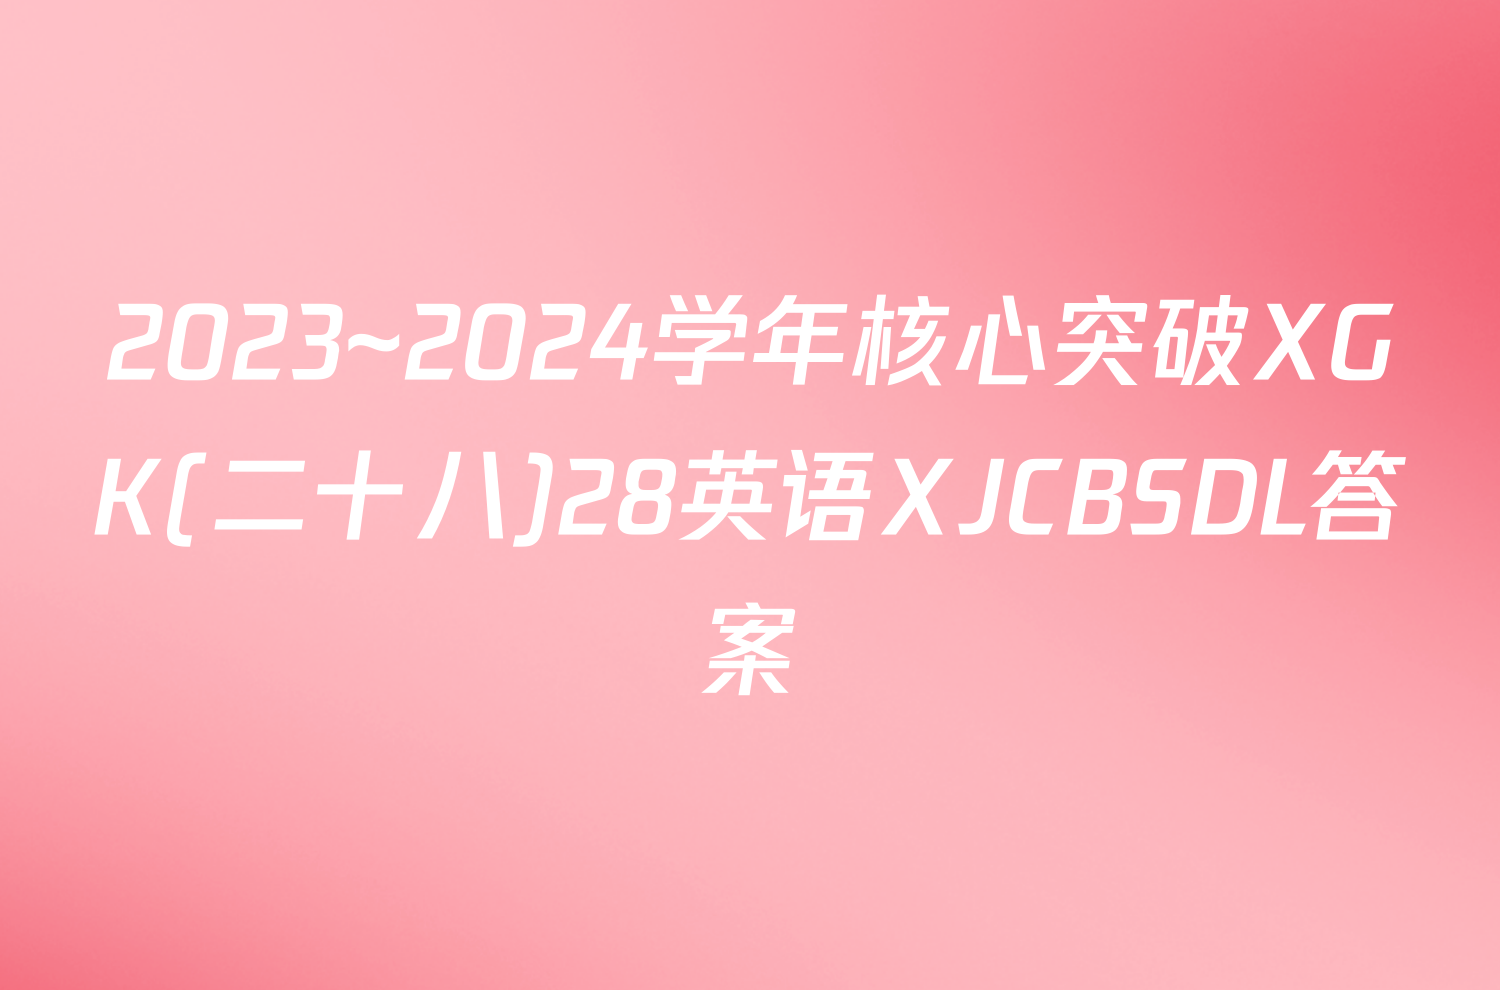 2023~2024学年核心突破XGK(二十八)28英语XJCBSDL答案